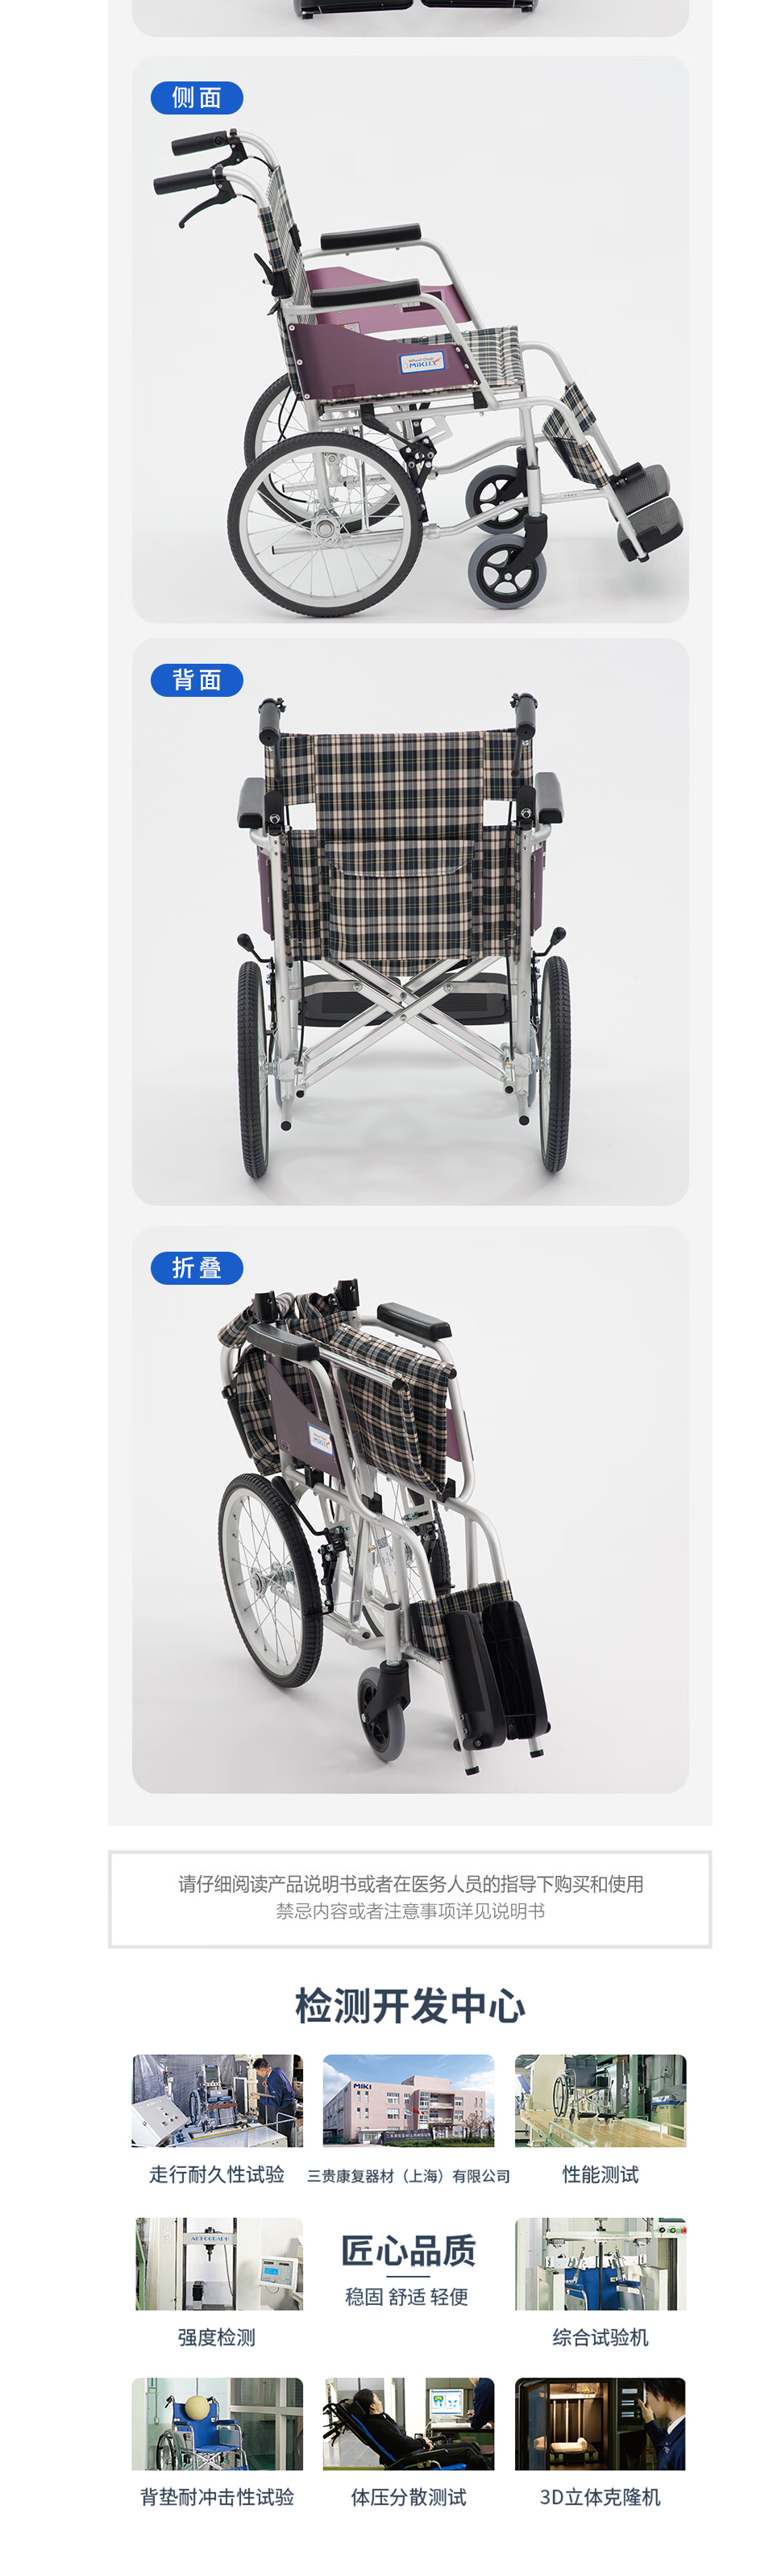 西安轮椅